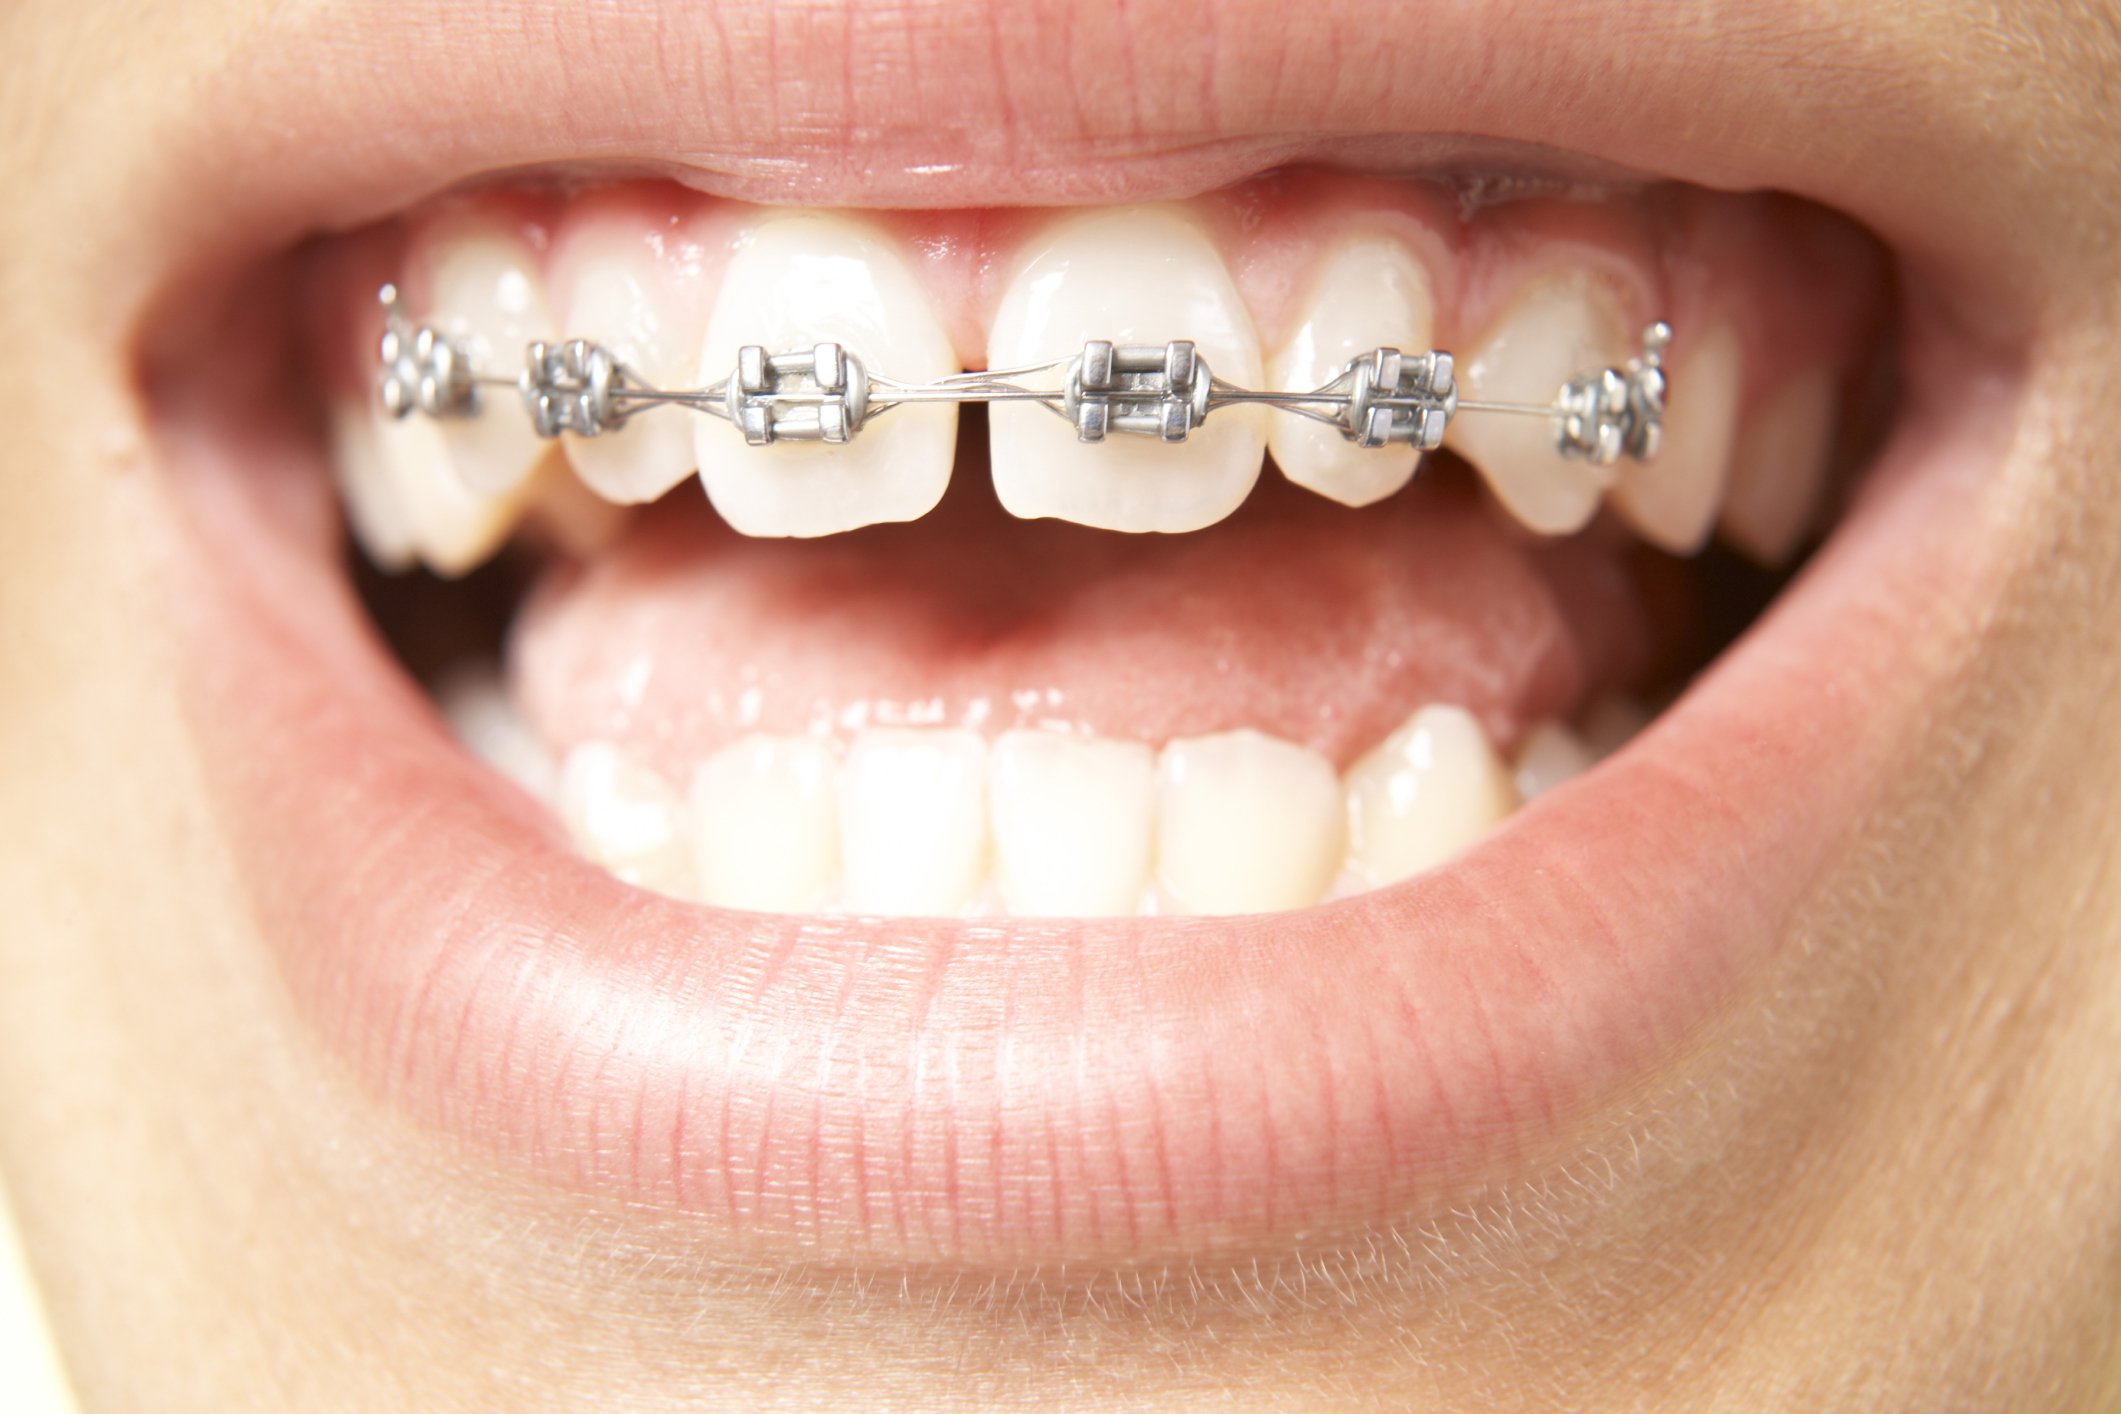 سیم کشی دندان برای یک فک نیز قابل انجام است